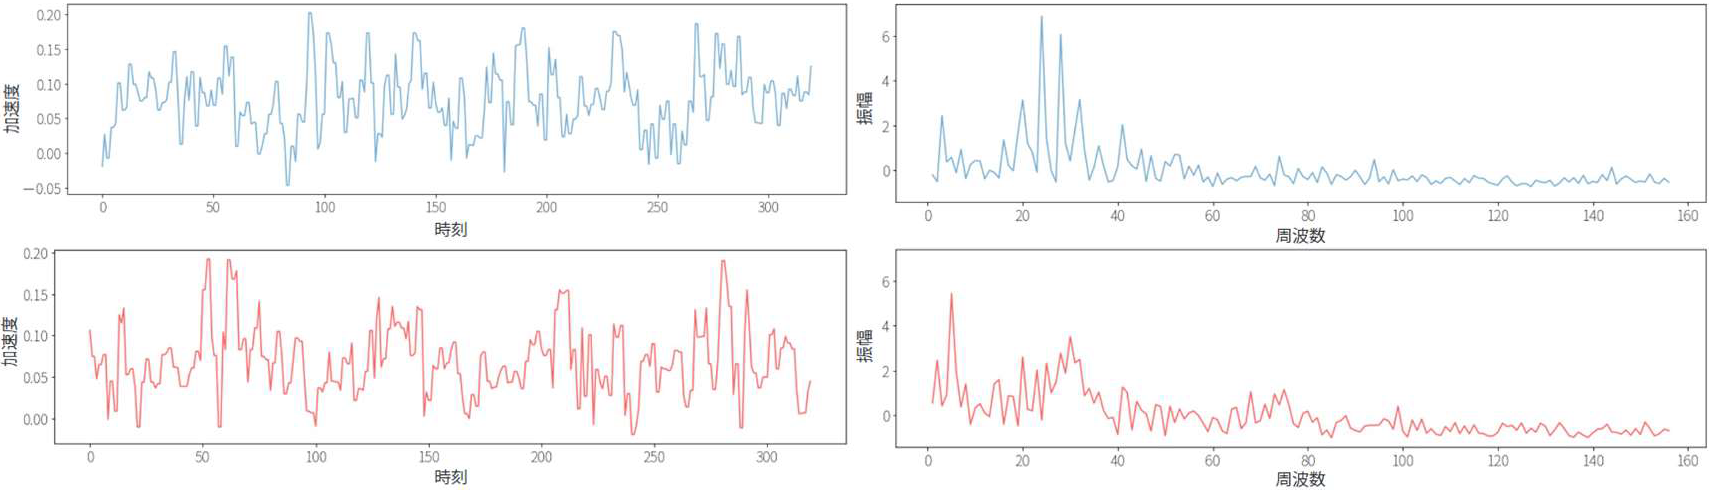 （左上）正常な締結の加速度データ，（右上）正常な波形にFFTの処理を行ったデータ，（左下）異常な締結の加速度データ，（右下）異常な波形にFFTの処理を行ったデータ　(Upper left) Acceleration data of normal fastening. (Upper right) Normal waveform after FFT processing. (Lower left) Accelerationdata of abnormal fastening. (Lower right) Abnormal waveform after FFT processing.